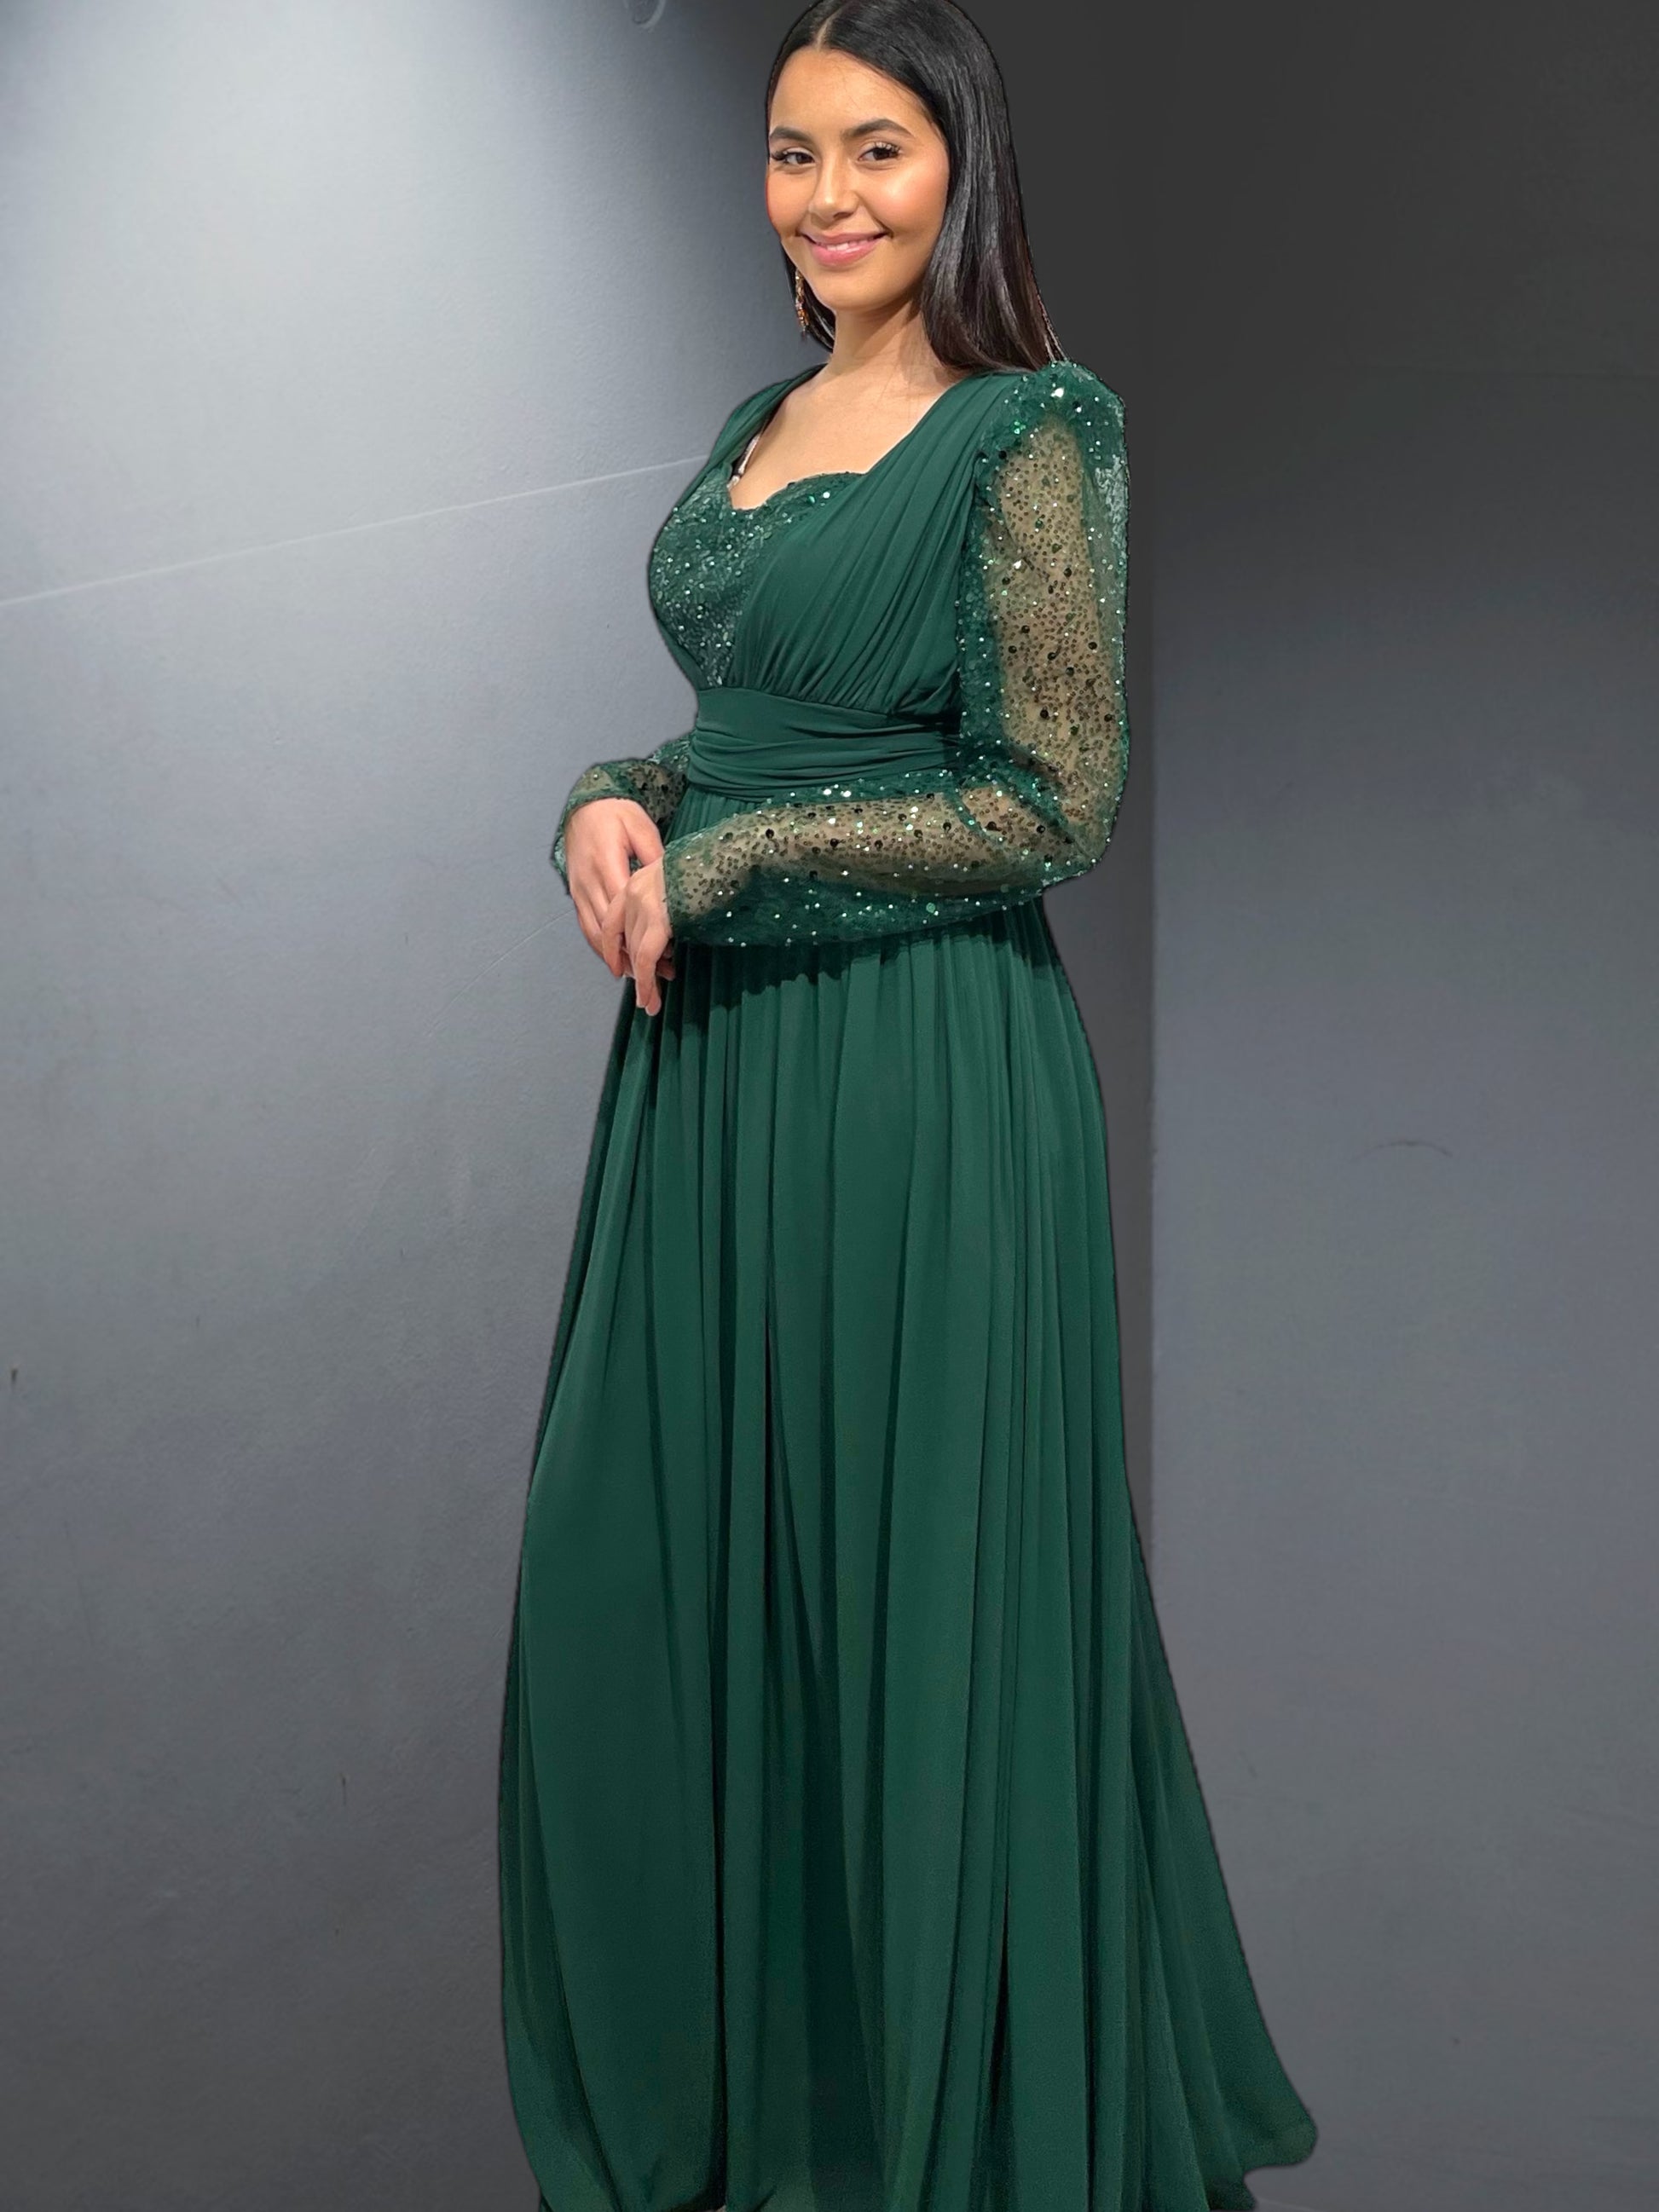 l'élégance avec la robe "Nice", une création emblématique d'Amir Couture - AmirCouture 